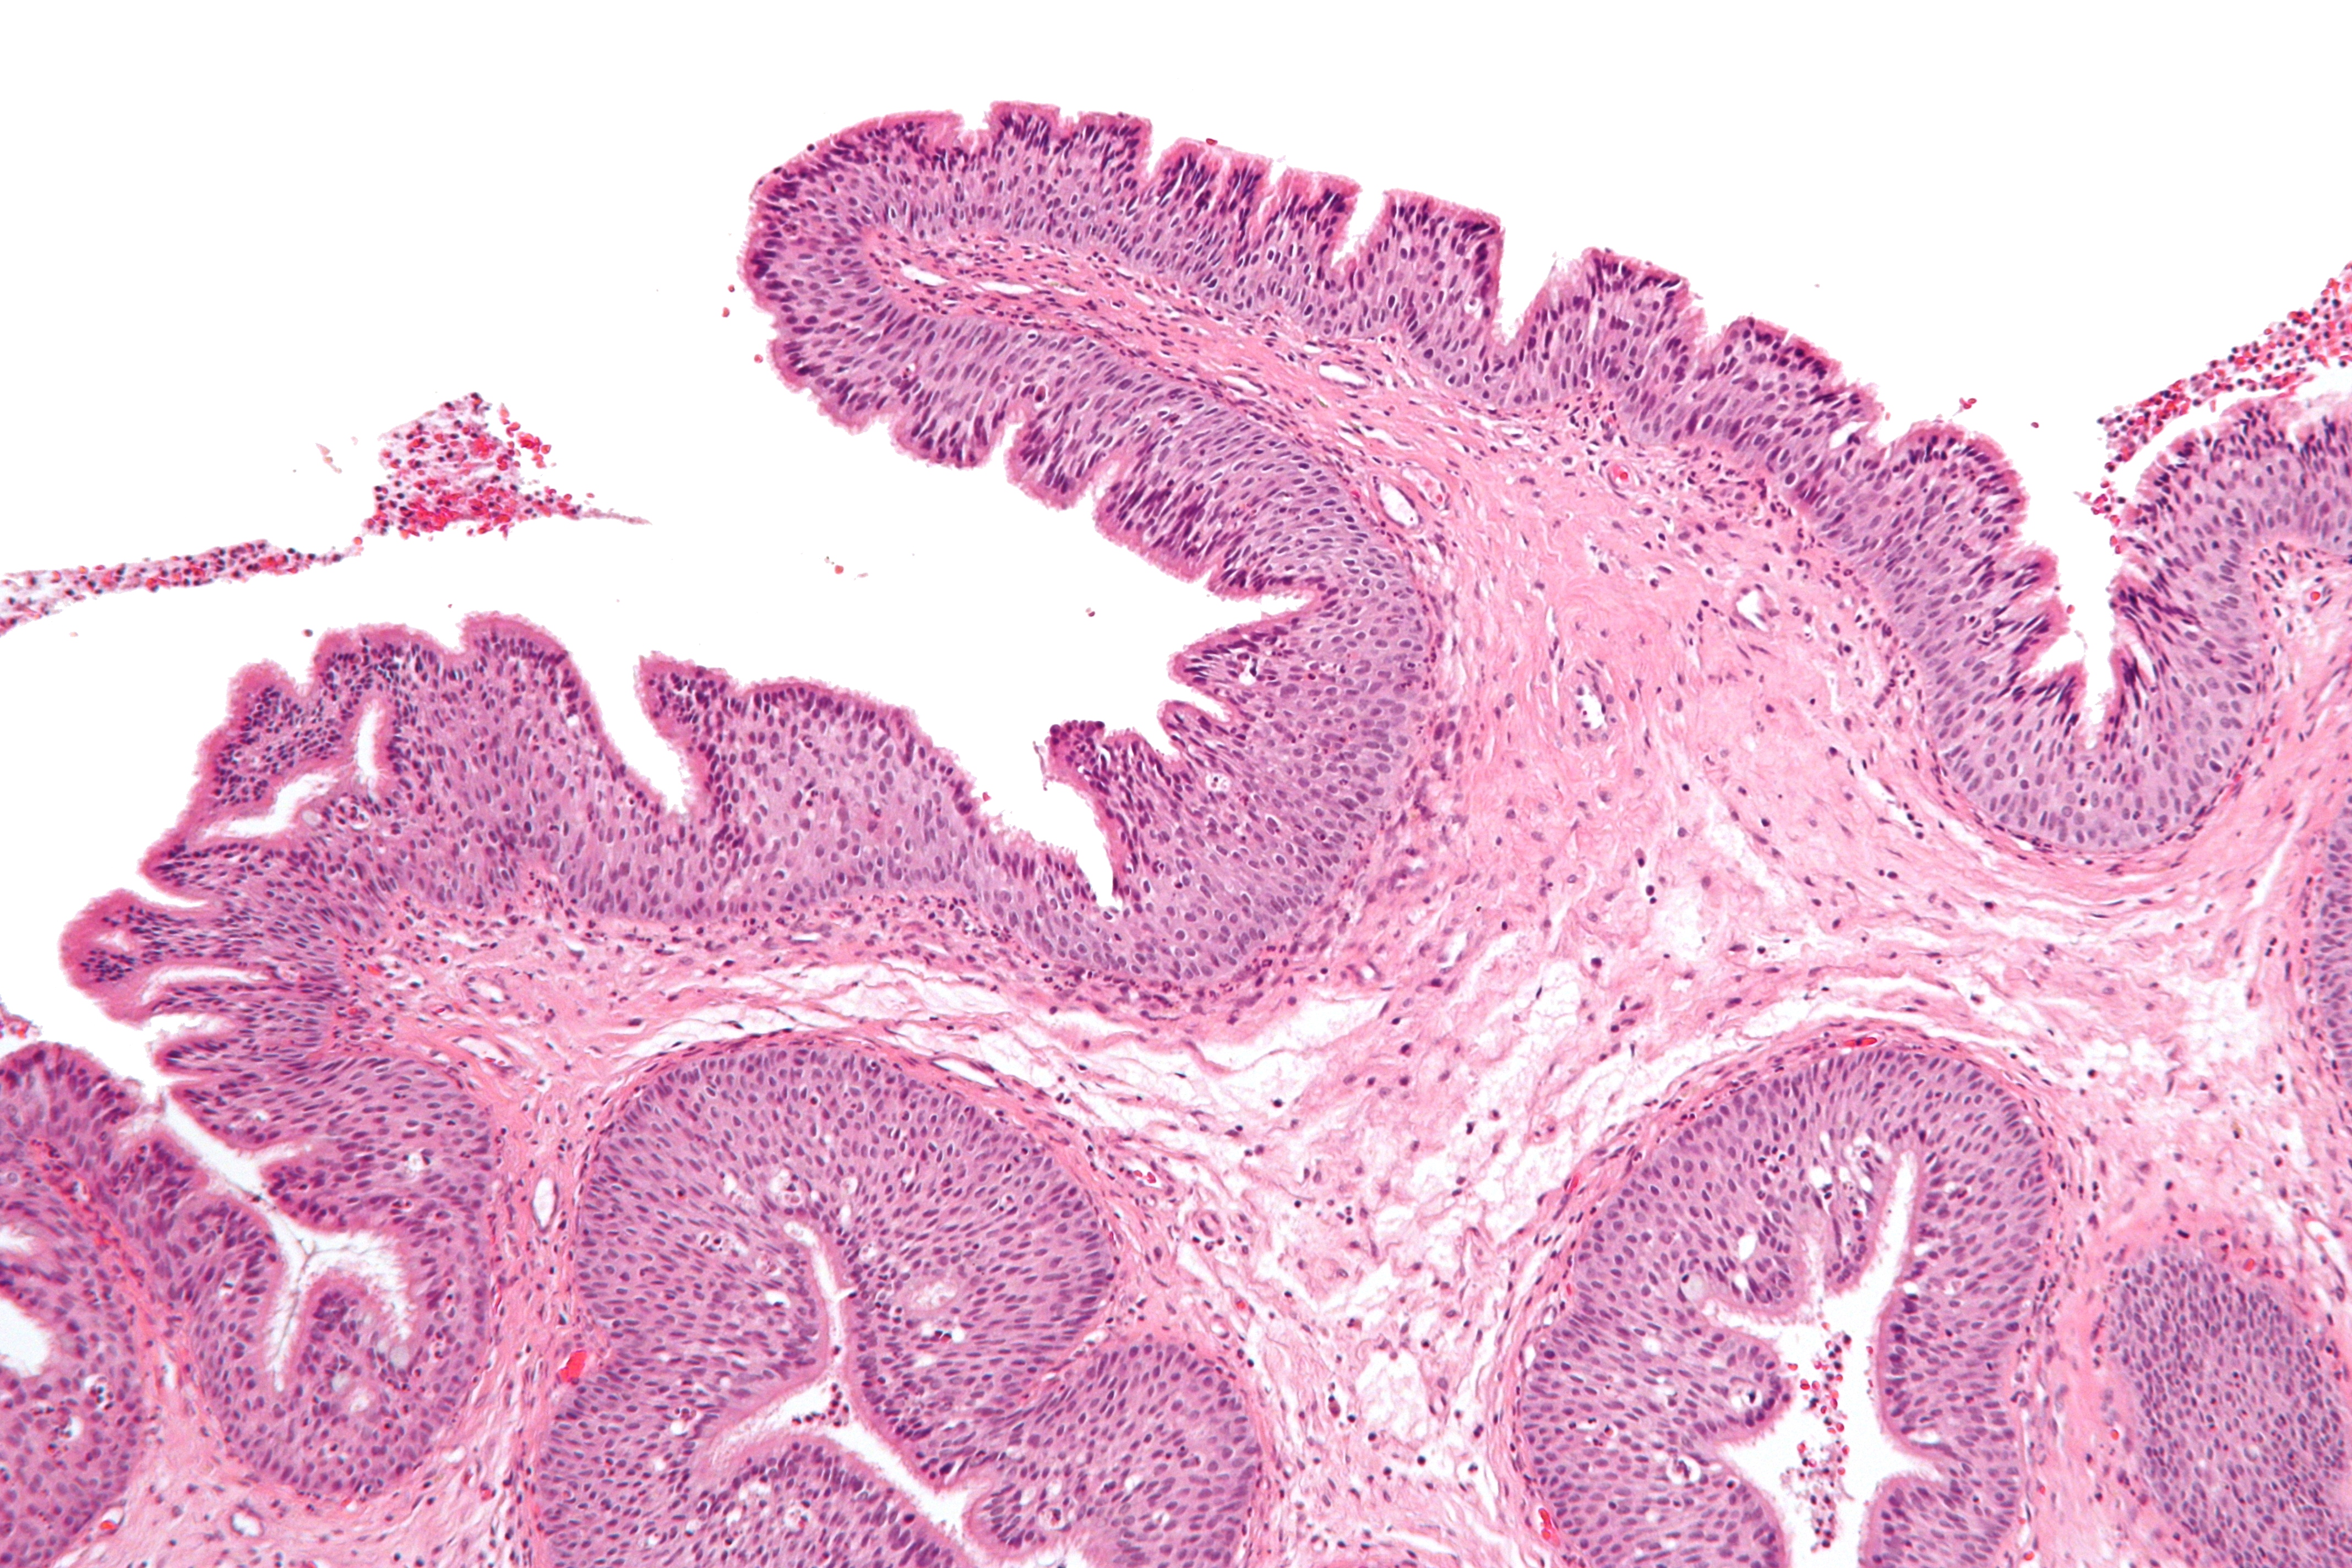 Papilloma of sinus